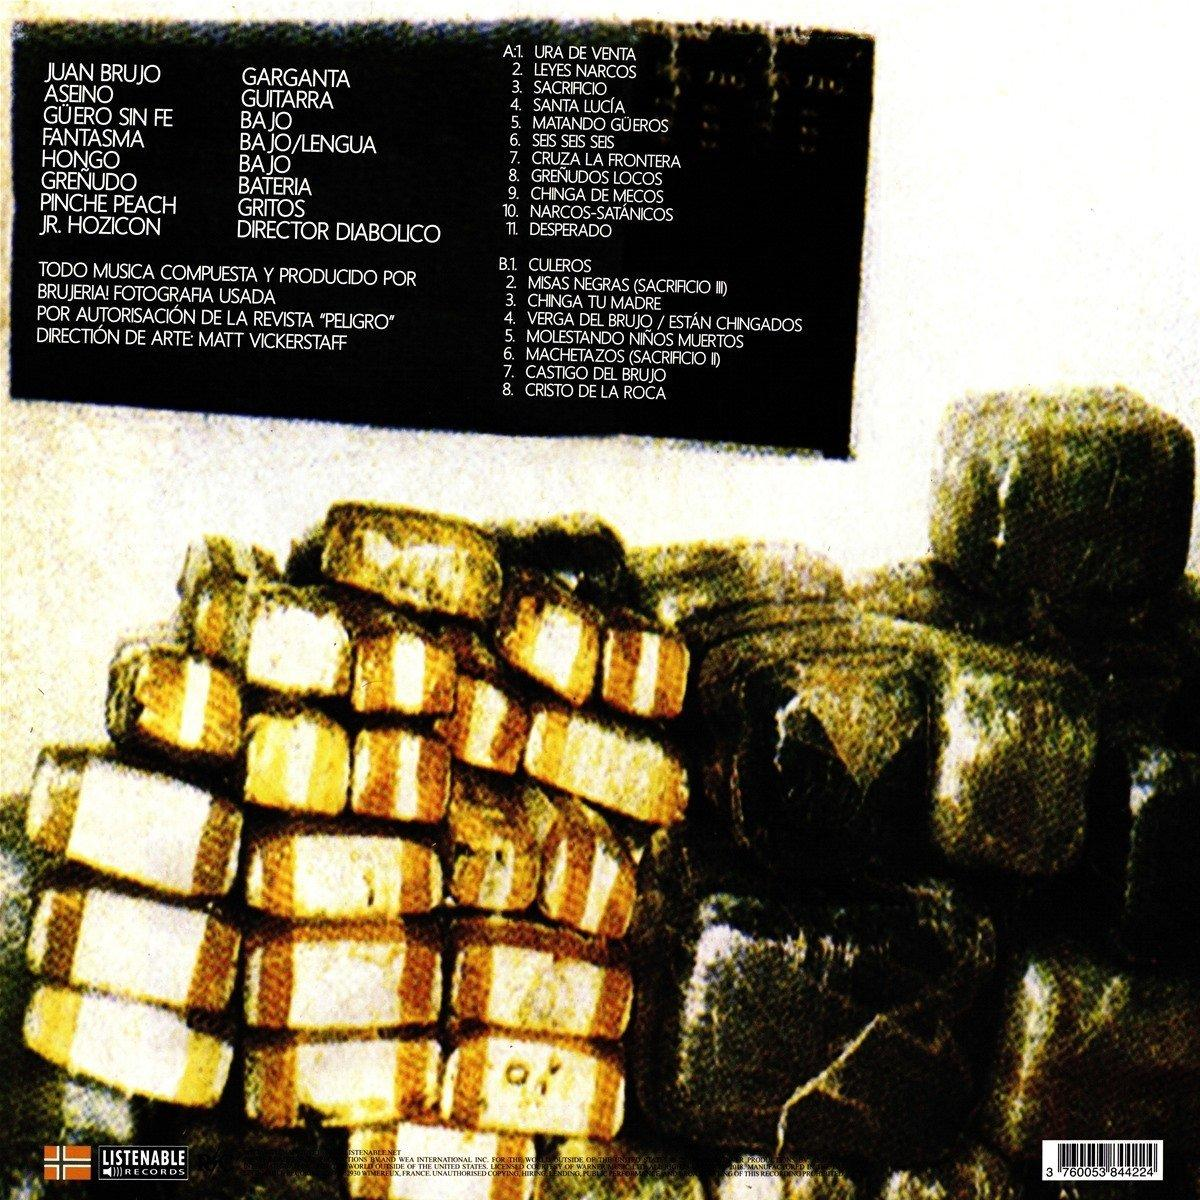 Brujeria - Matando (Vinyl Gueros - LP) (Vinyl)